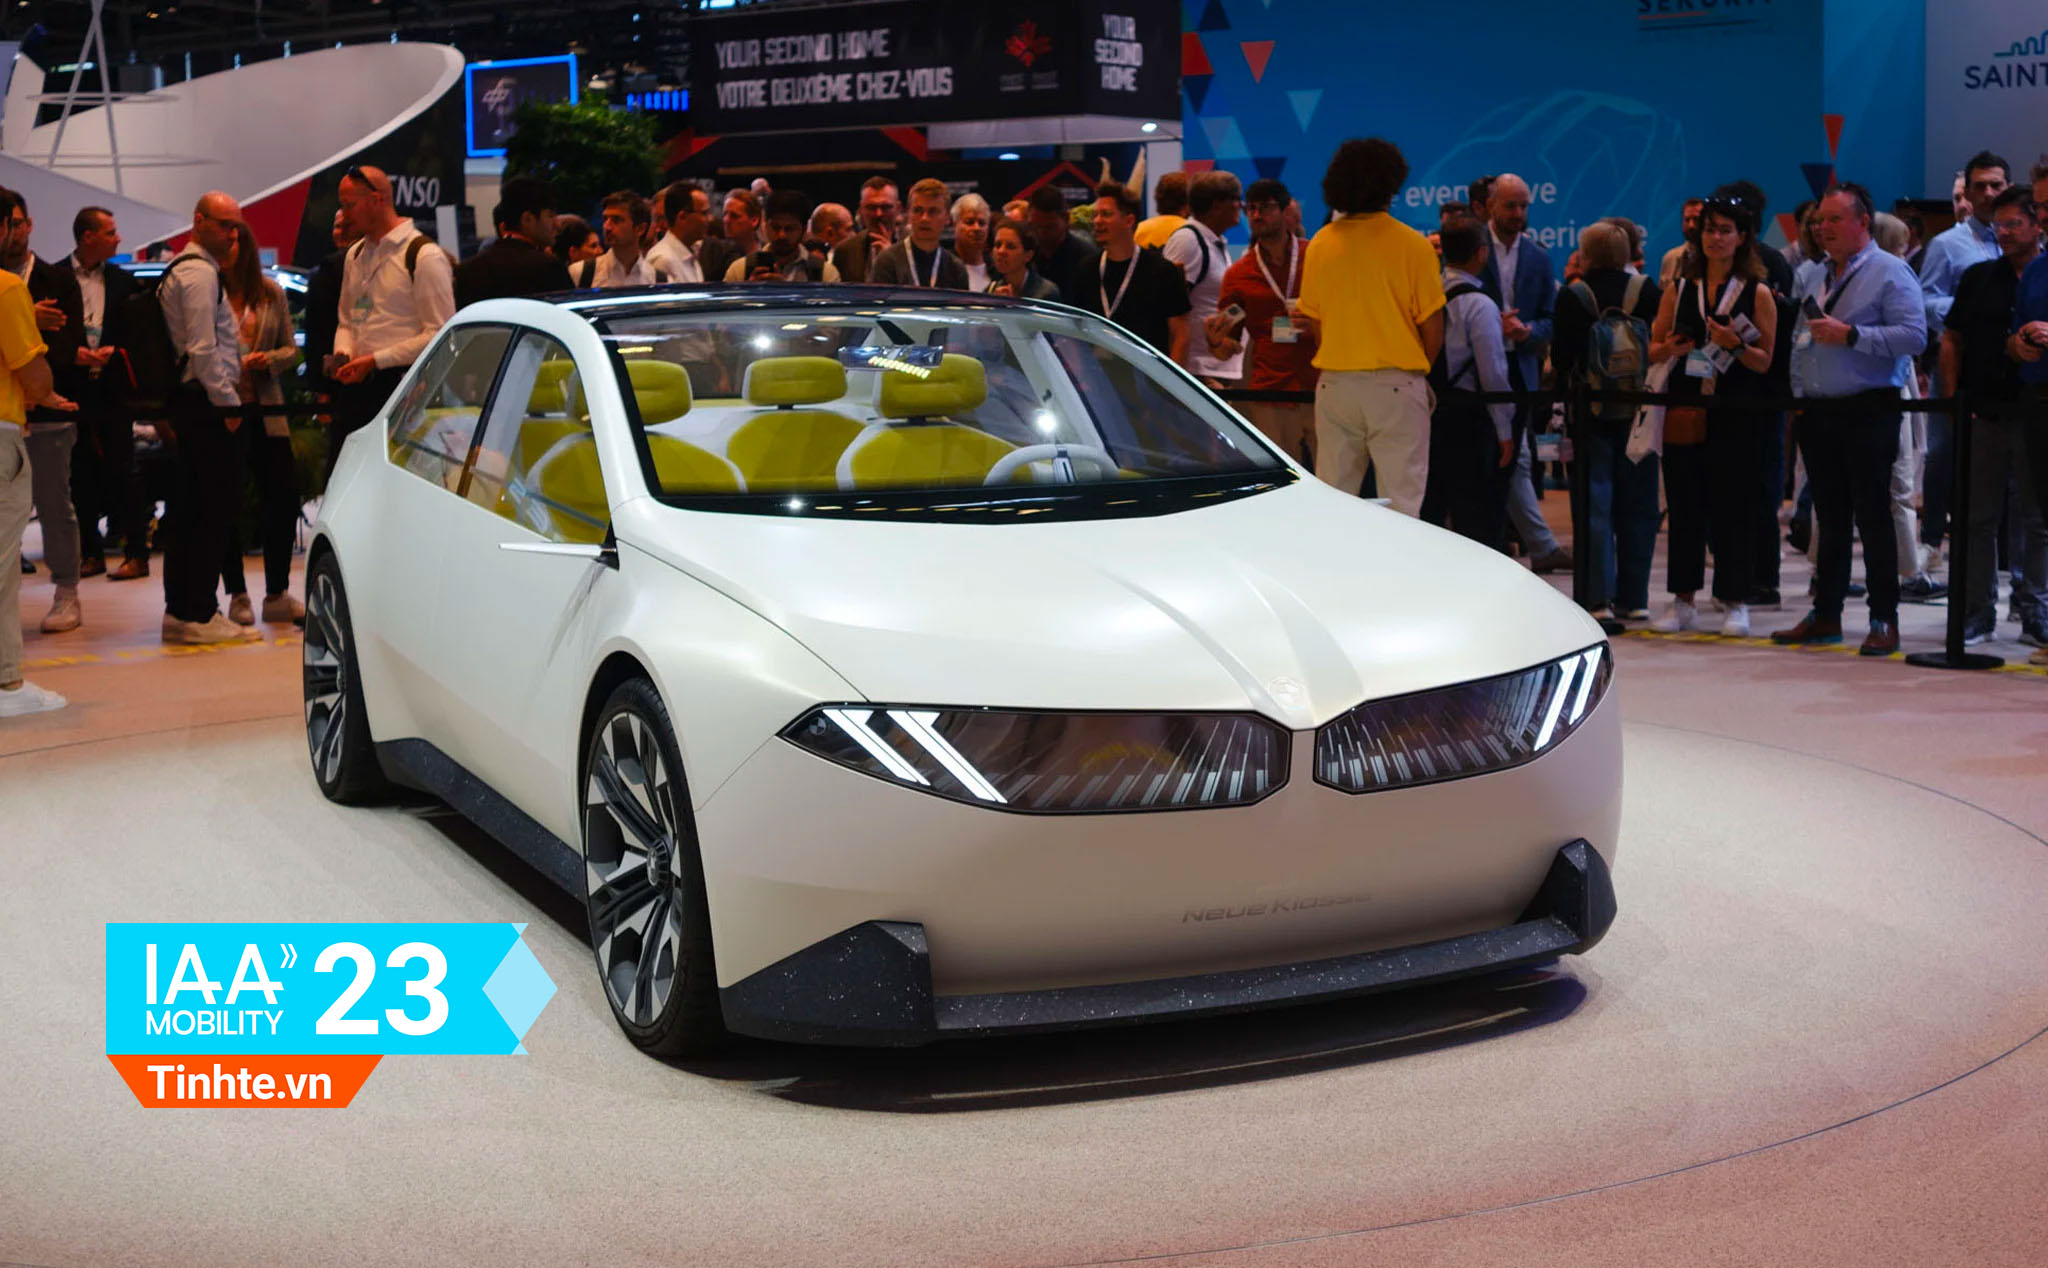 IAA23: Trên tay Concept BMW Neue Klasse, cái nhìn về xe BMW trong tương lai